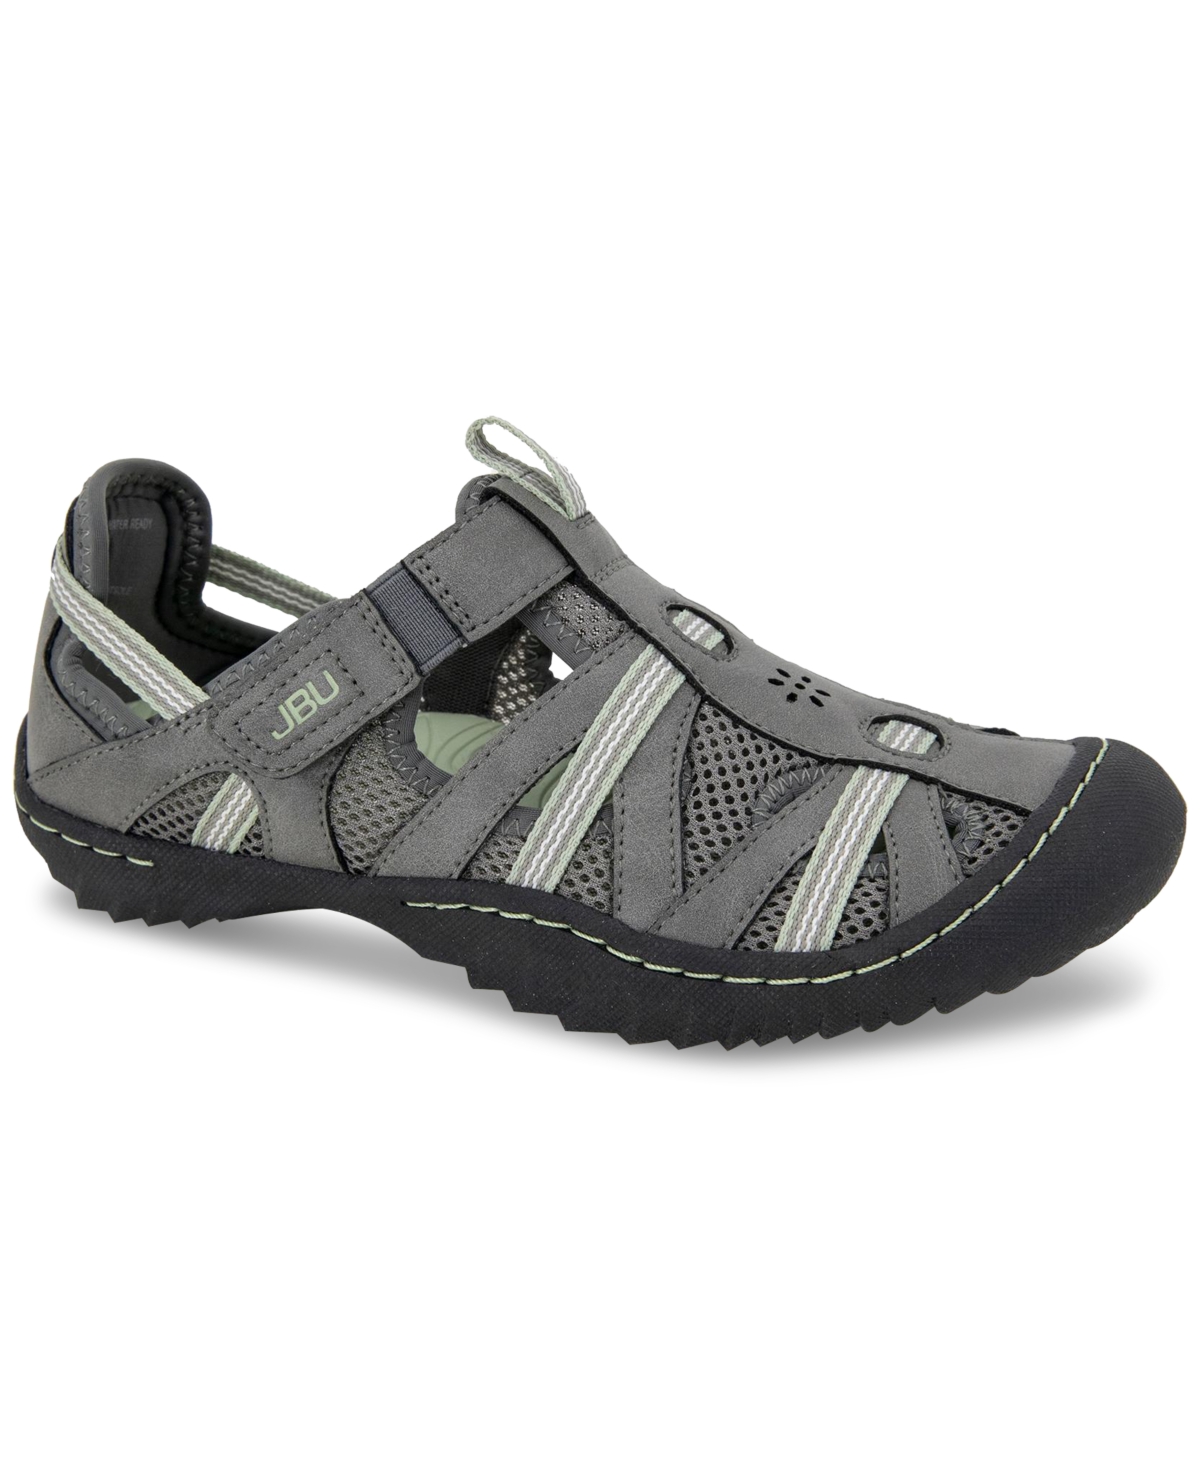 Jbu Women's Regional Water-ready Strappy Sandal Flats Women's Shoes In Dk. Grey/pale Moss